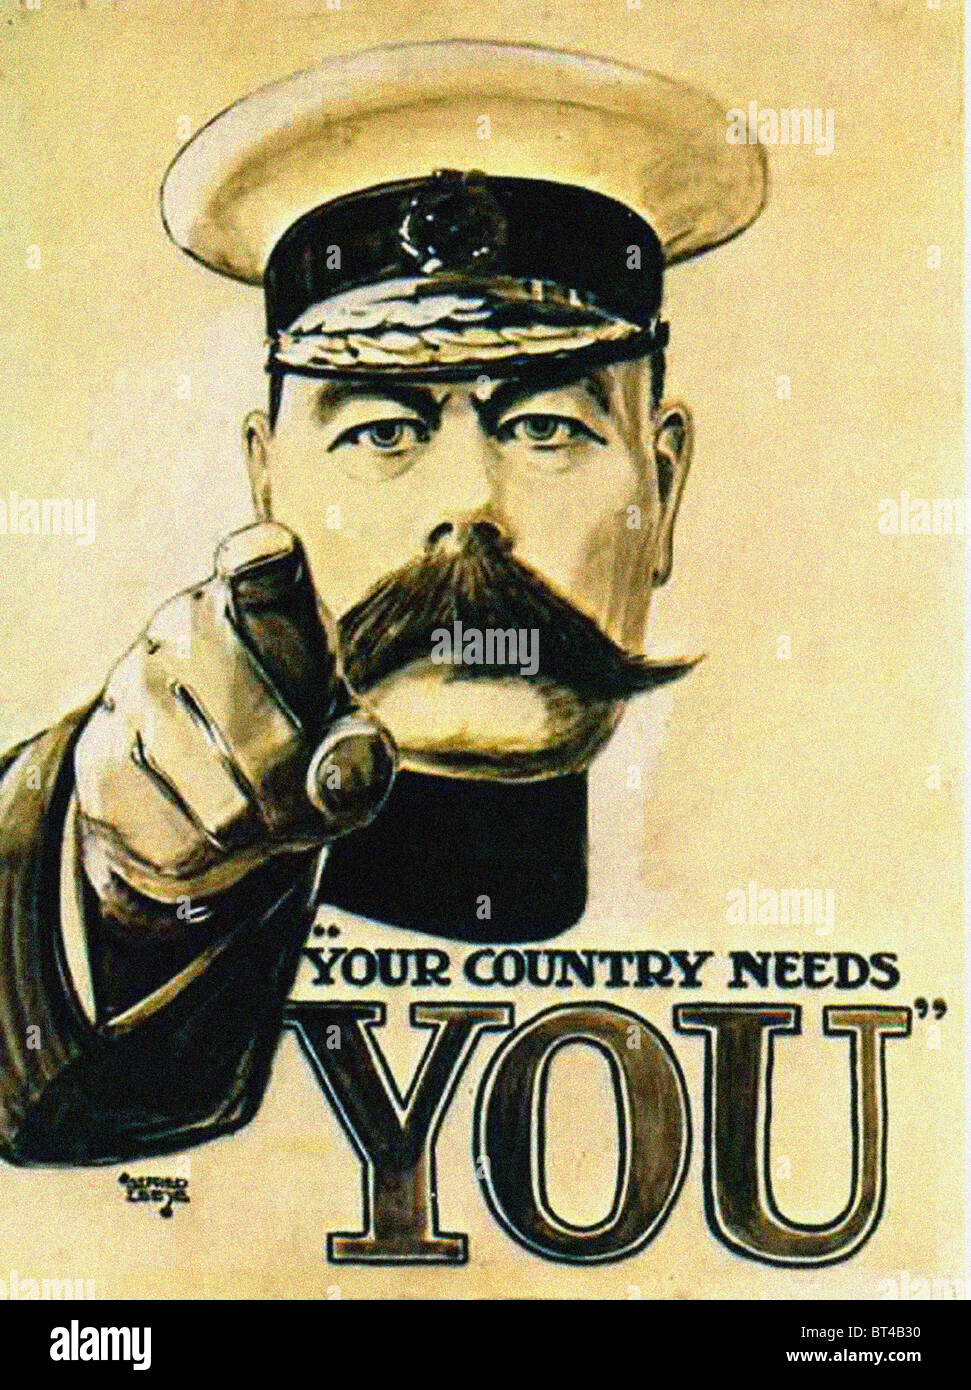 Cette fameuse première guerre mondiale affiche "votre pays a besoin de vous' avec Lord Kitchener. Votre pays a besoin de vous poster ce qui a encouragé des milliers de s'enrôler pour combattre dans la Première Guerre mondiale, la Première Guerre mondiale Banque D'Images